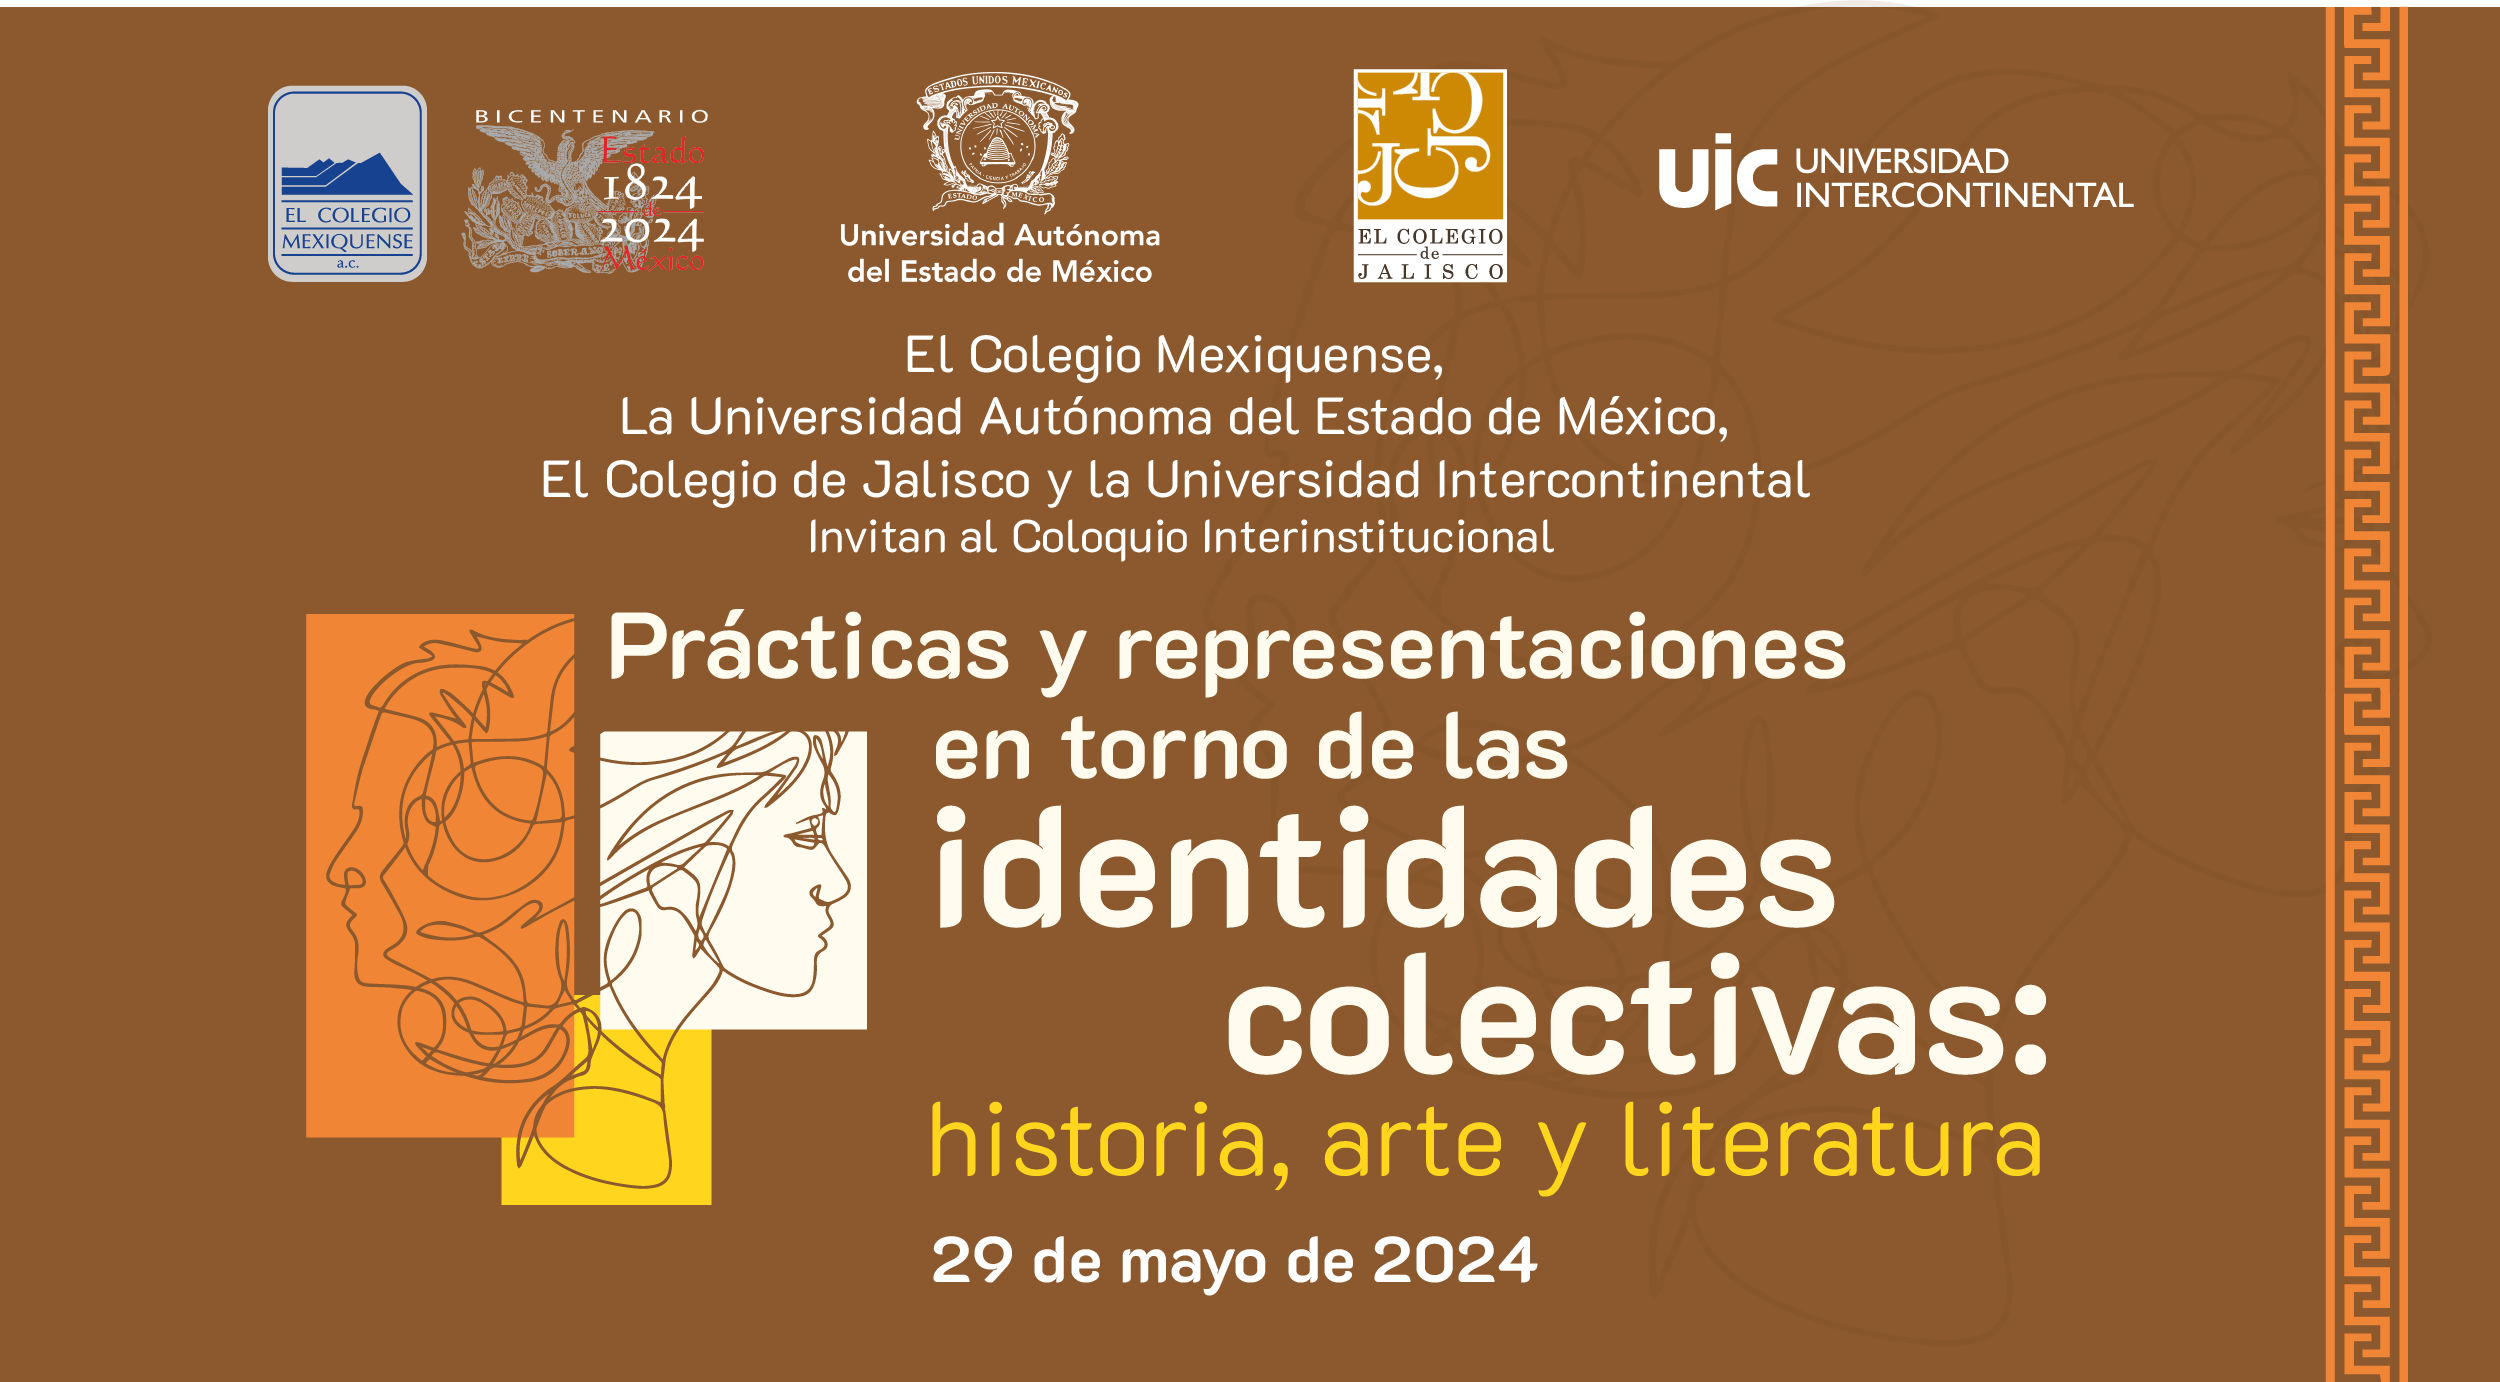 Coloquio Interinstitucional. Prácticas y representaciones en torno de las identidades colectivas: historia, arte y literatura